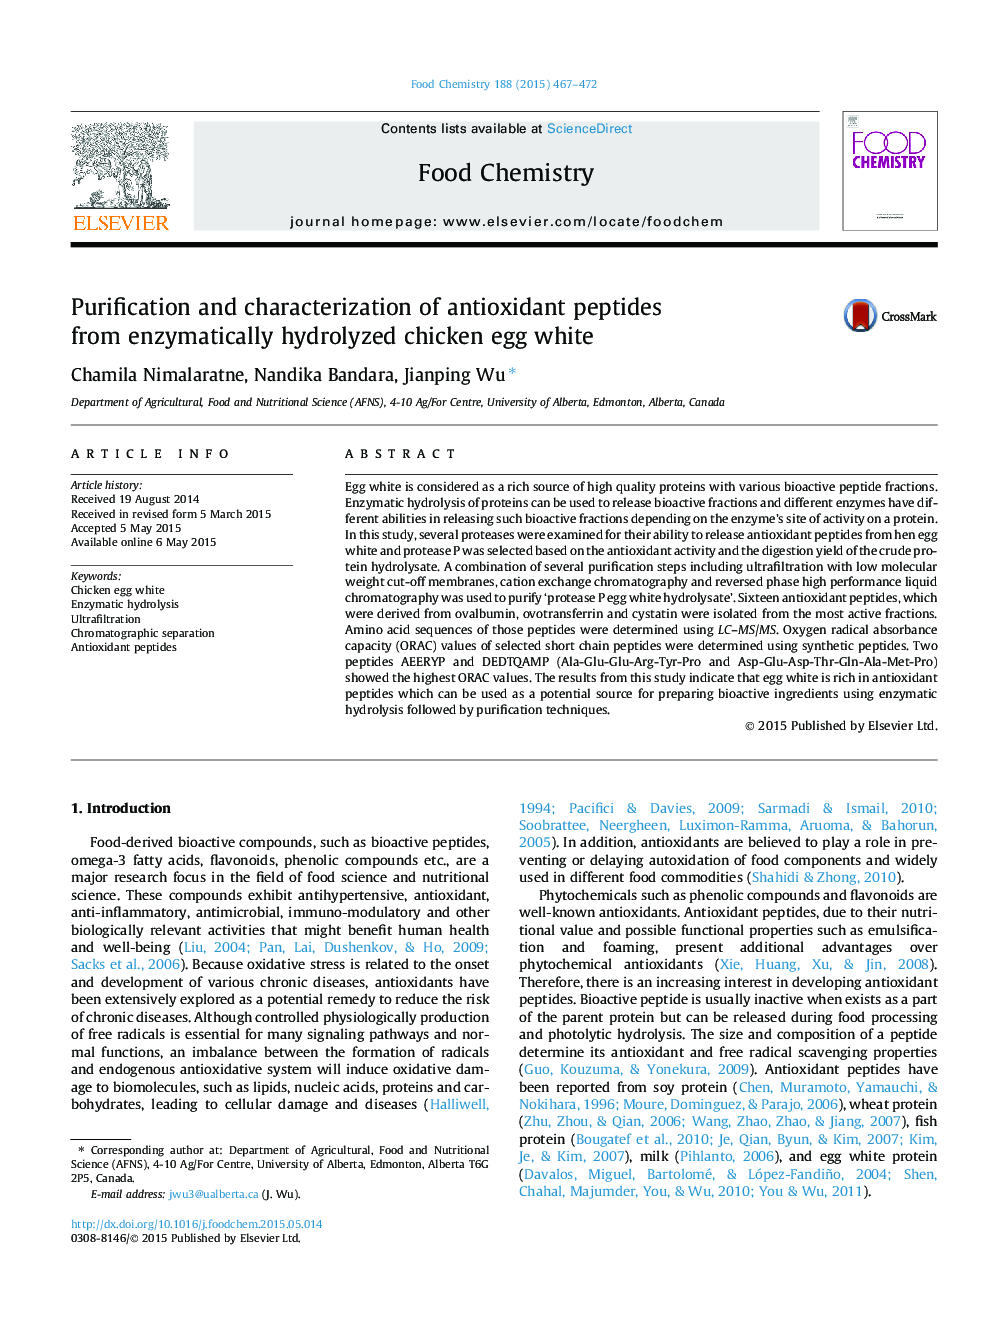 خالص سازی و مشخص نمودن پپتیدهای آنتی اکسیدانی از تخم مرغ تخم مرغی هیدرولیز شده آنزیمیایی 